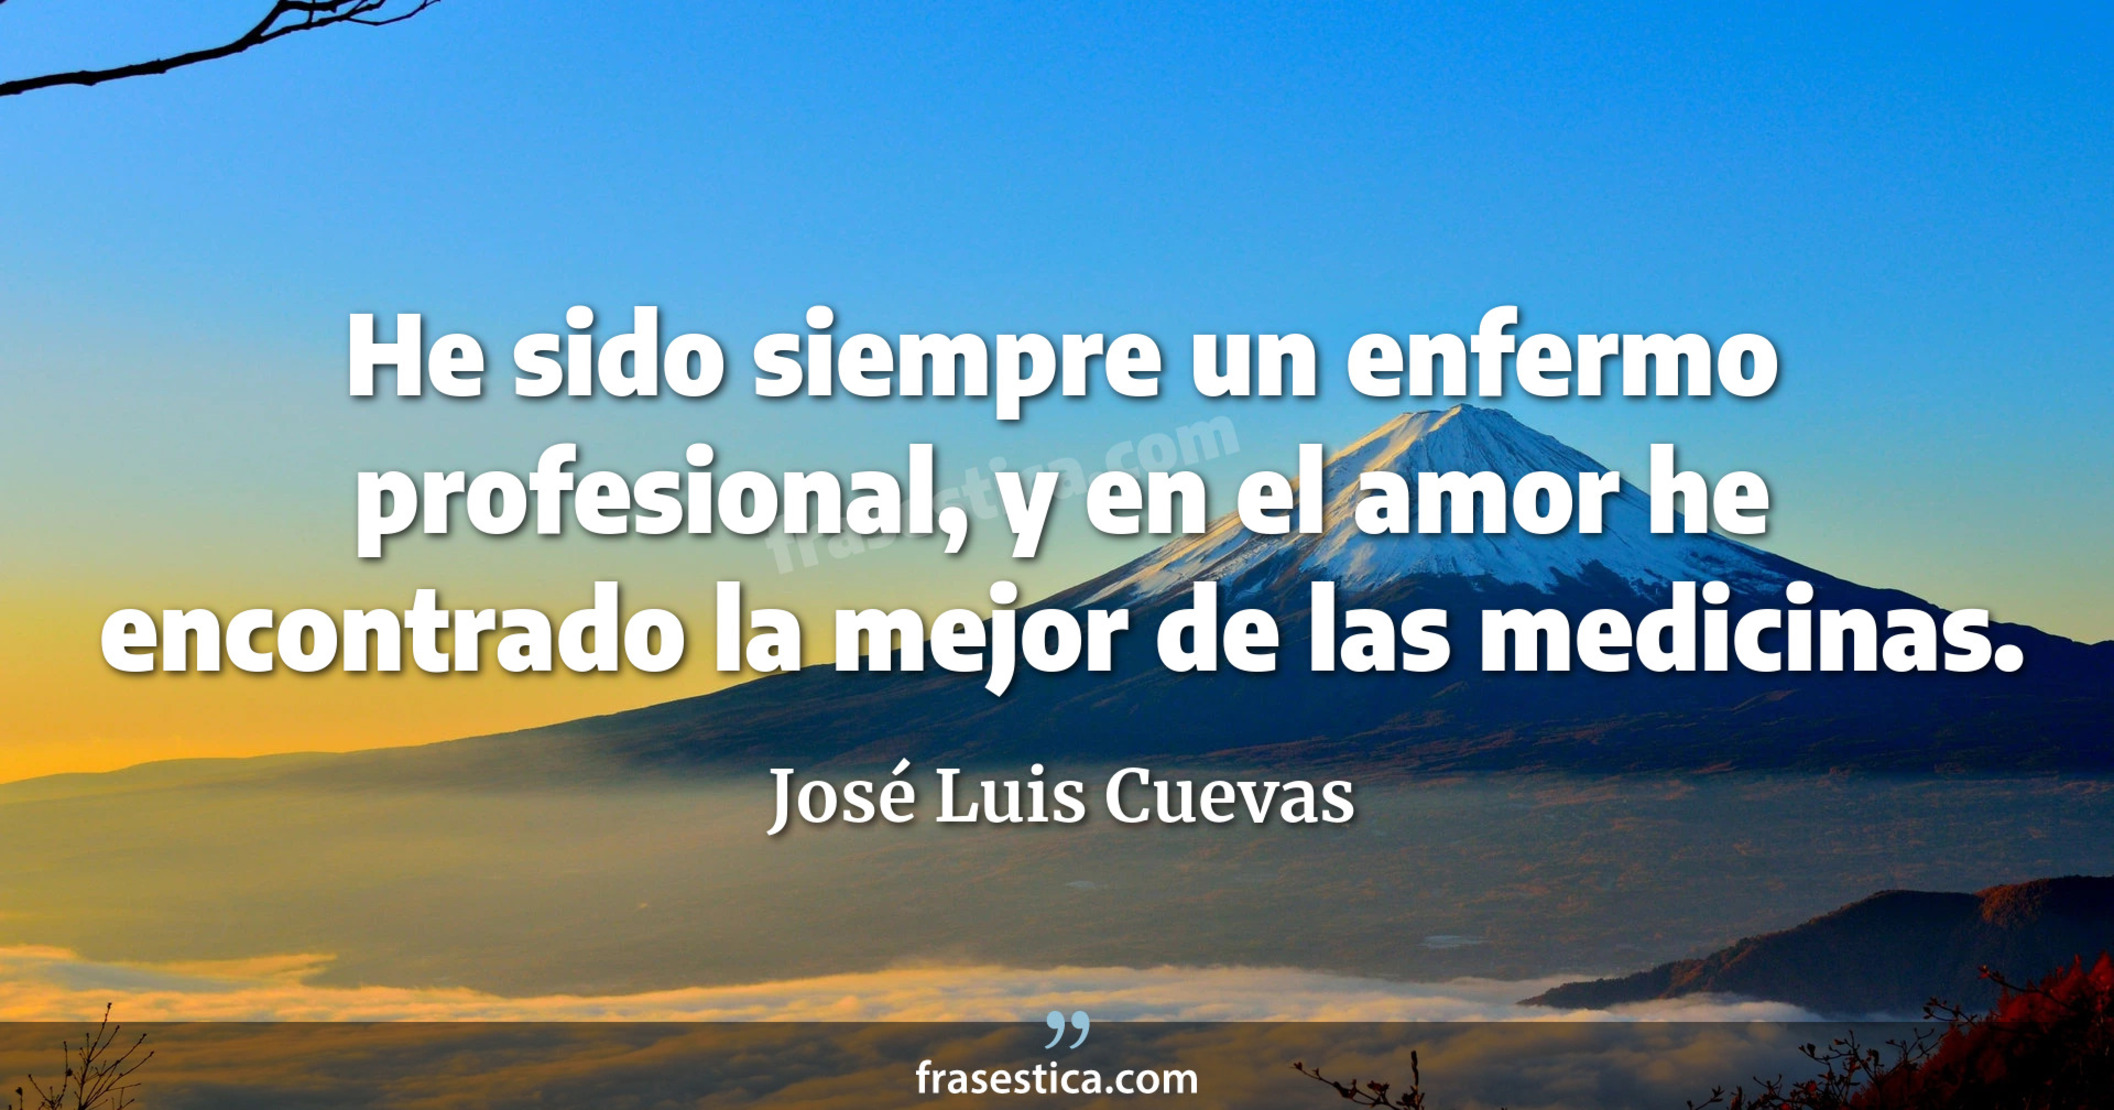 He sido siempre un enfermo profesional, y en el amor he encontrado la mejor de las medicinas. - José Luis Cuevas